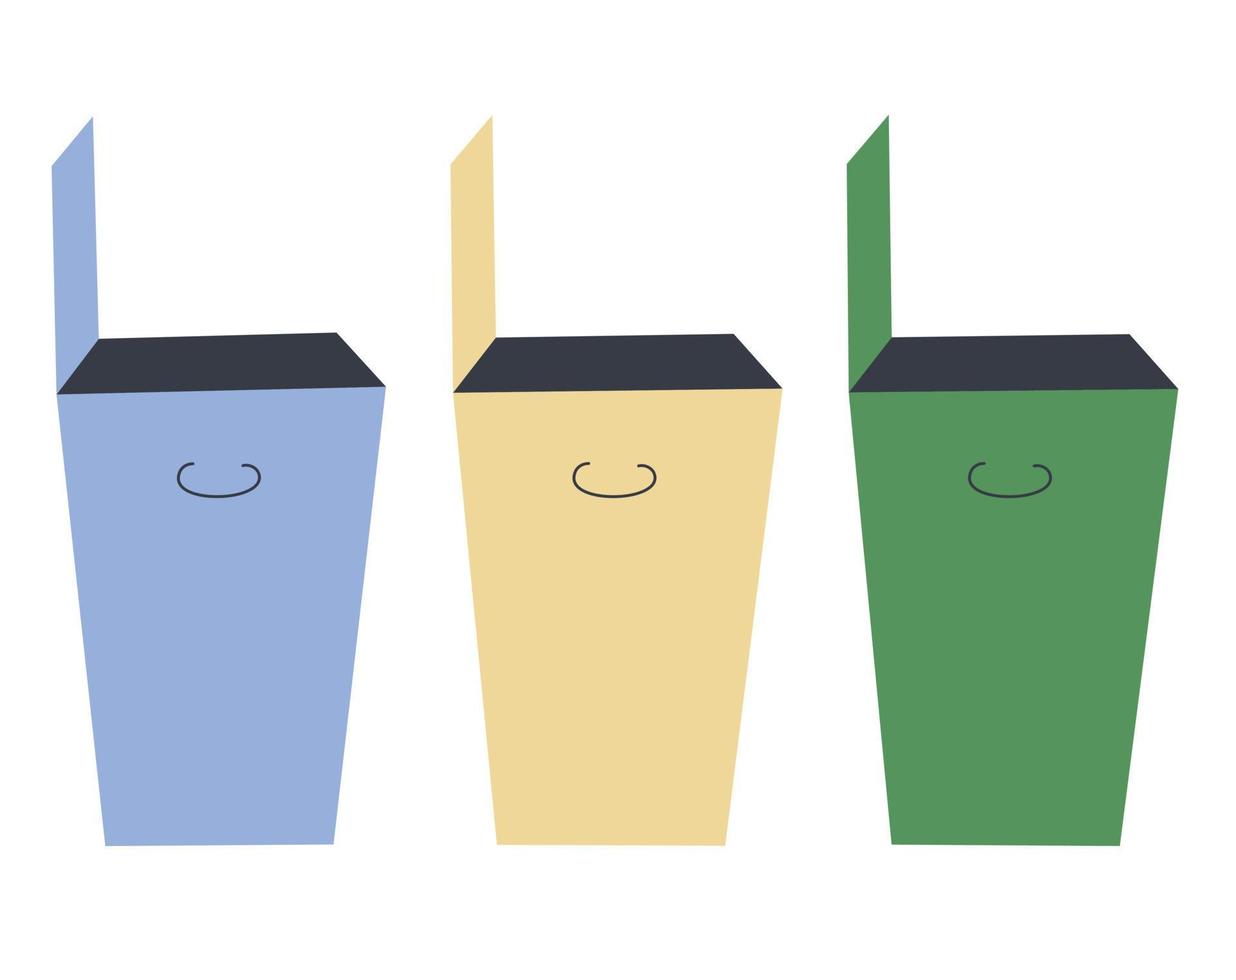 trois poubelles en bleu, jaune et vert. le concept de collecte séparée des déchets, de protection de la nature, de recyclage. illustration vectorielle. vecteur